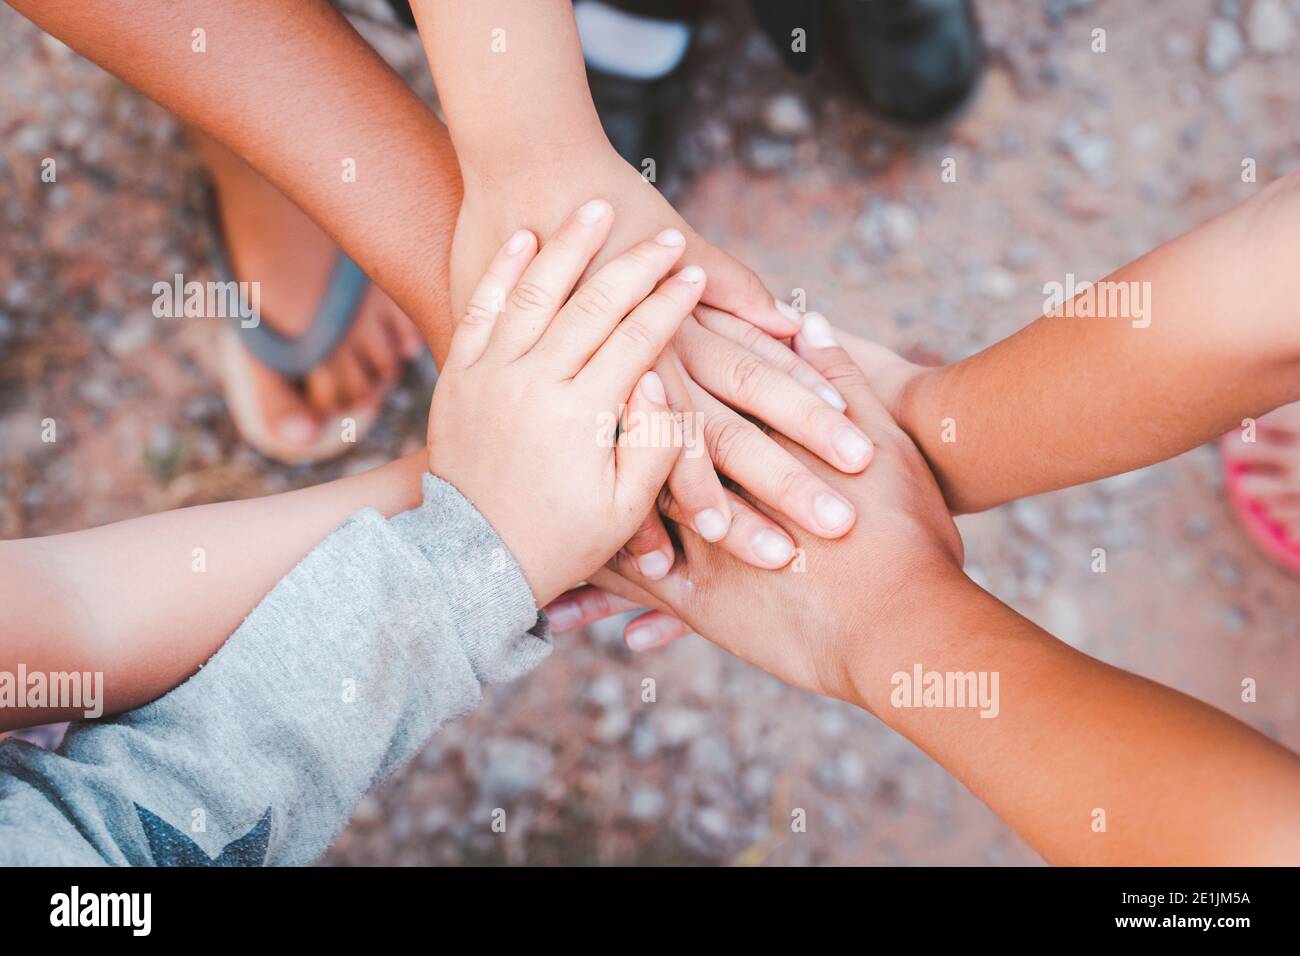 mani diverse unite insieme dall'amicizia della mano del bambino Foto Stock